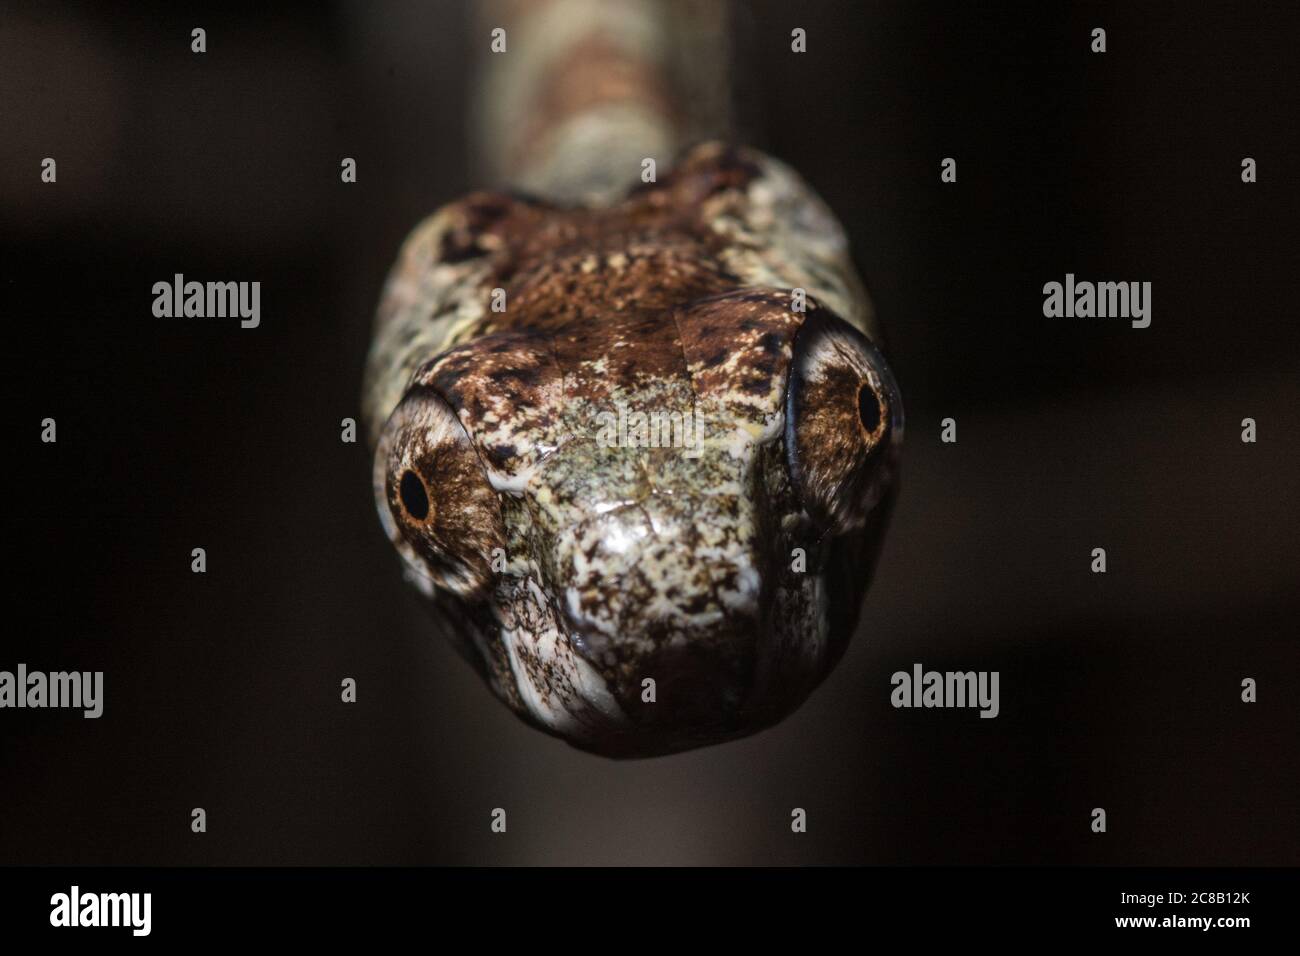 Aplopeltura boa, il serpente sgranato dal Sud-est asiatico. Questo serpente è stato trovato per avere movimento unico di sega della ganascia che lo aiuta ad estrarre le lumache. Foto Stock